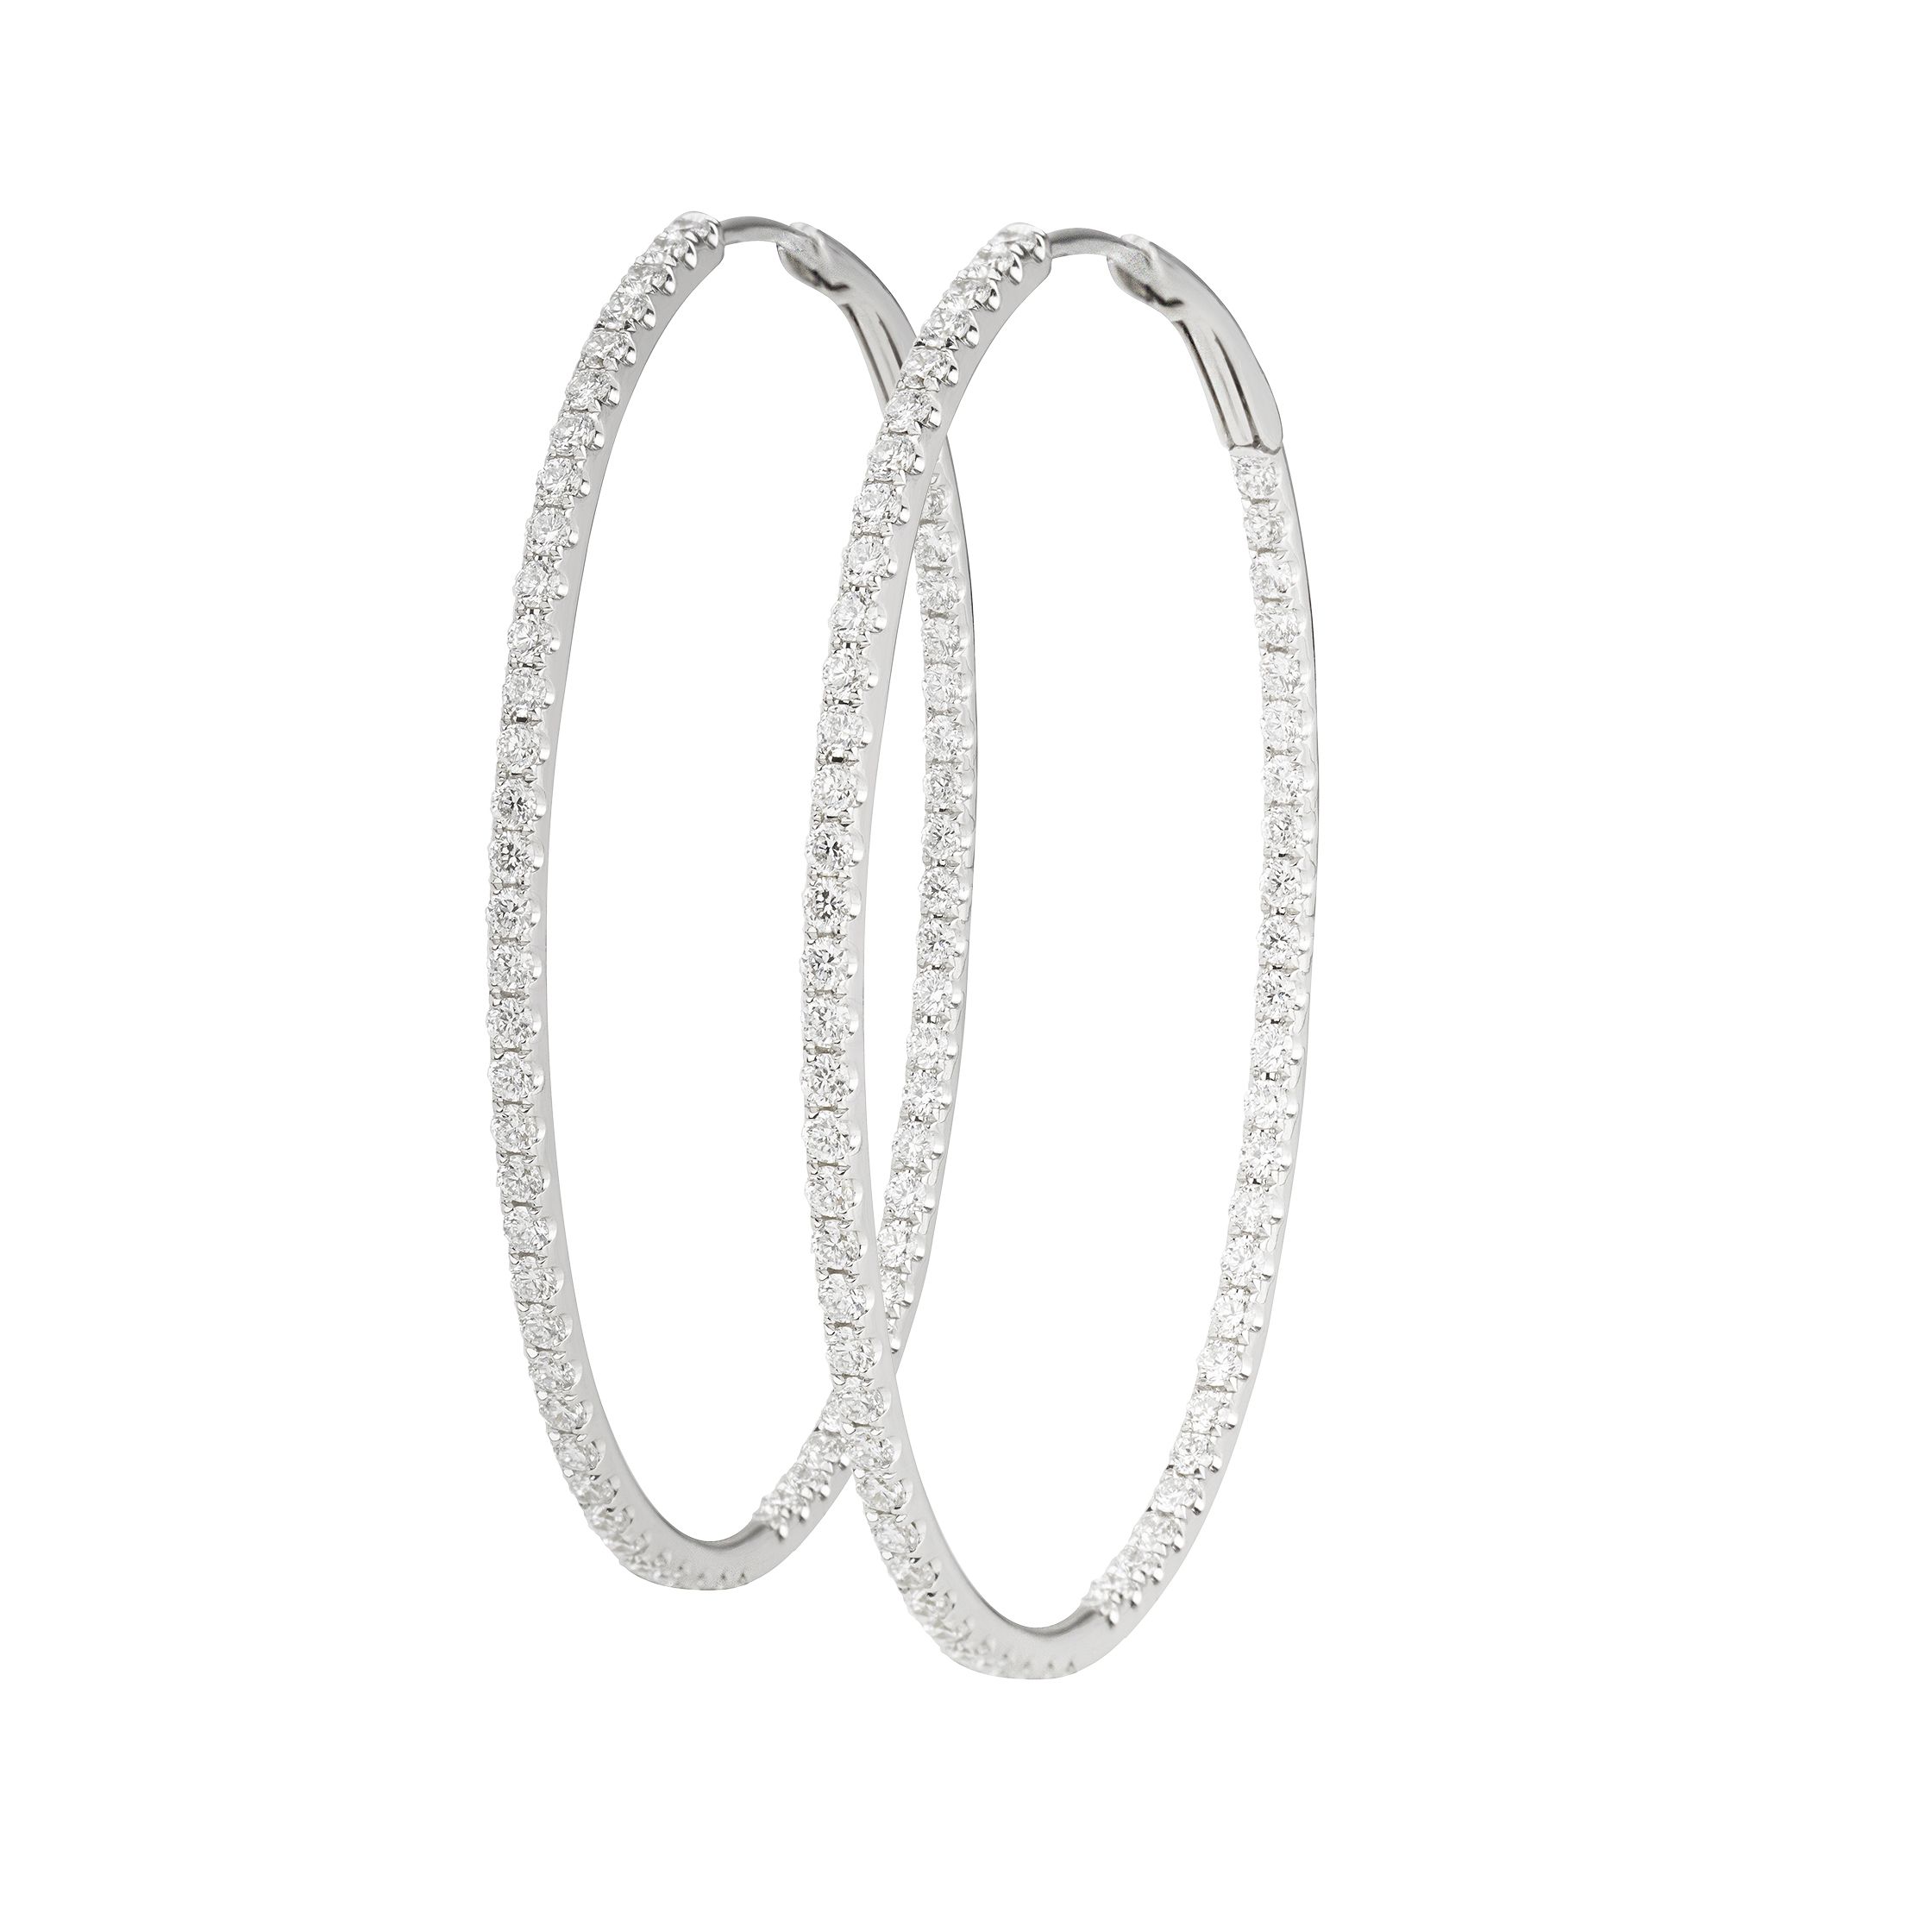 Macys Diamond Large Inside  Out Hoop Earrings 10 ct tw in 14k White  Gold  Macys